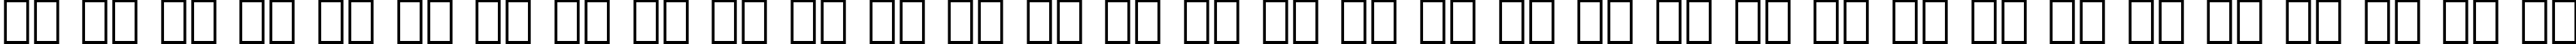 Пример написания русского алфавита шрифтом Normande Italic BT